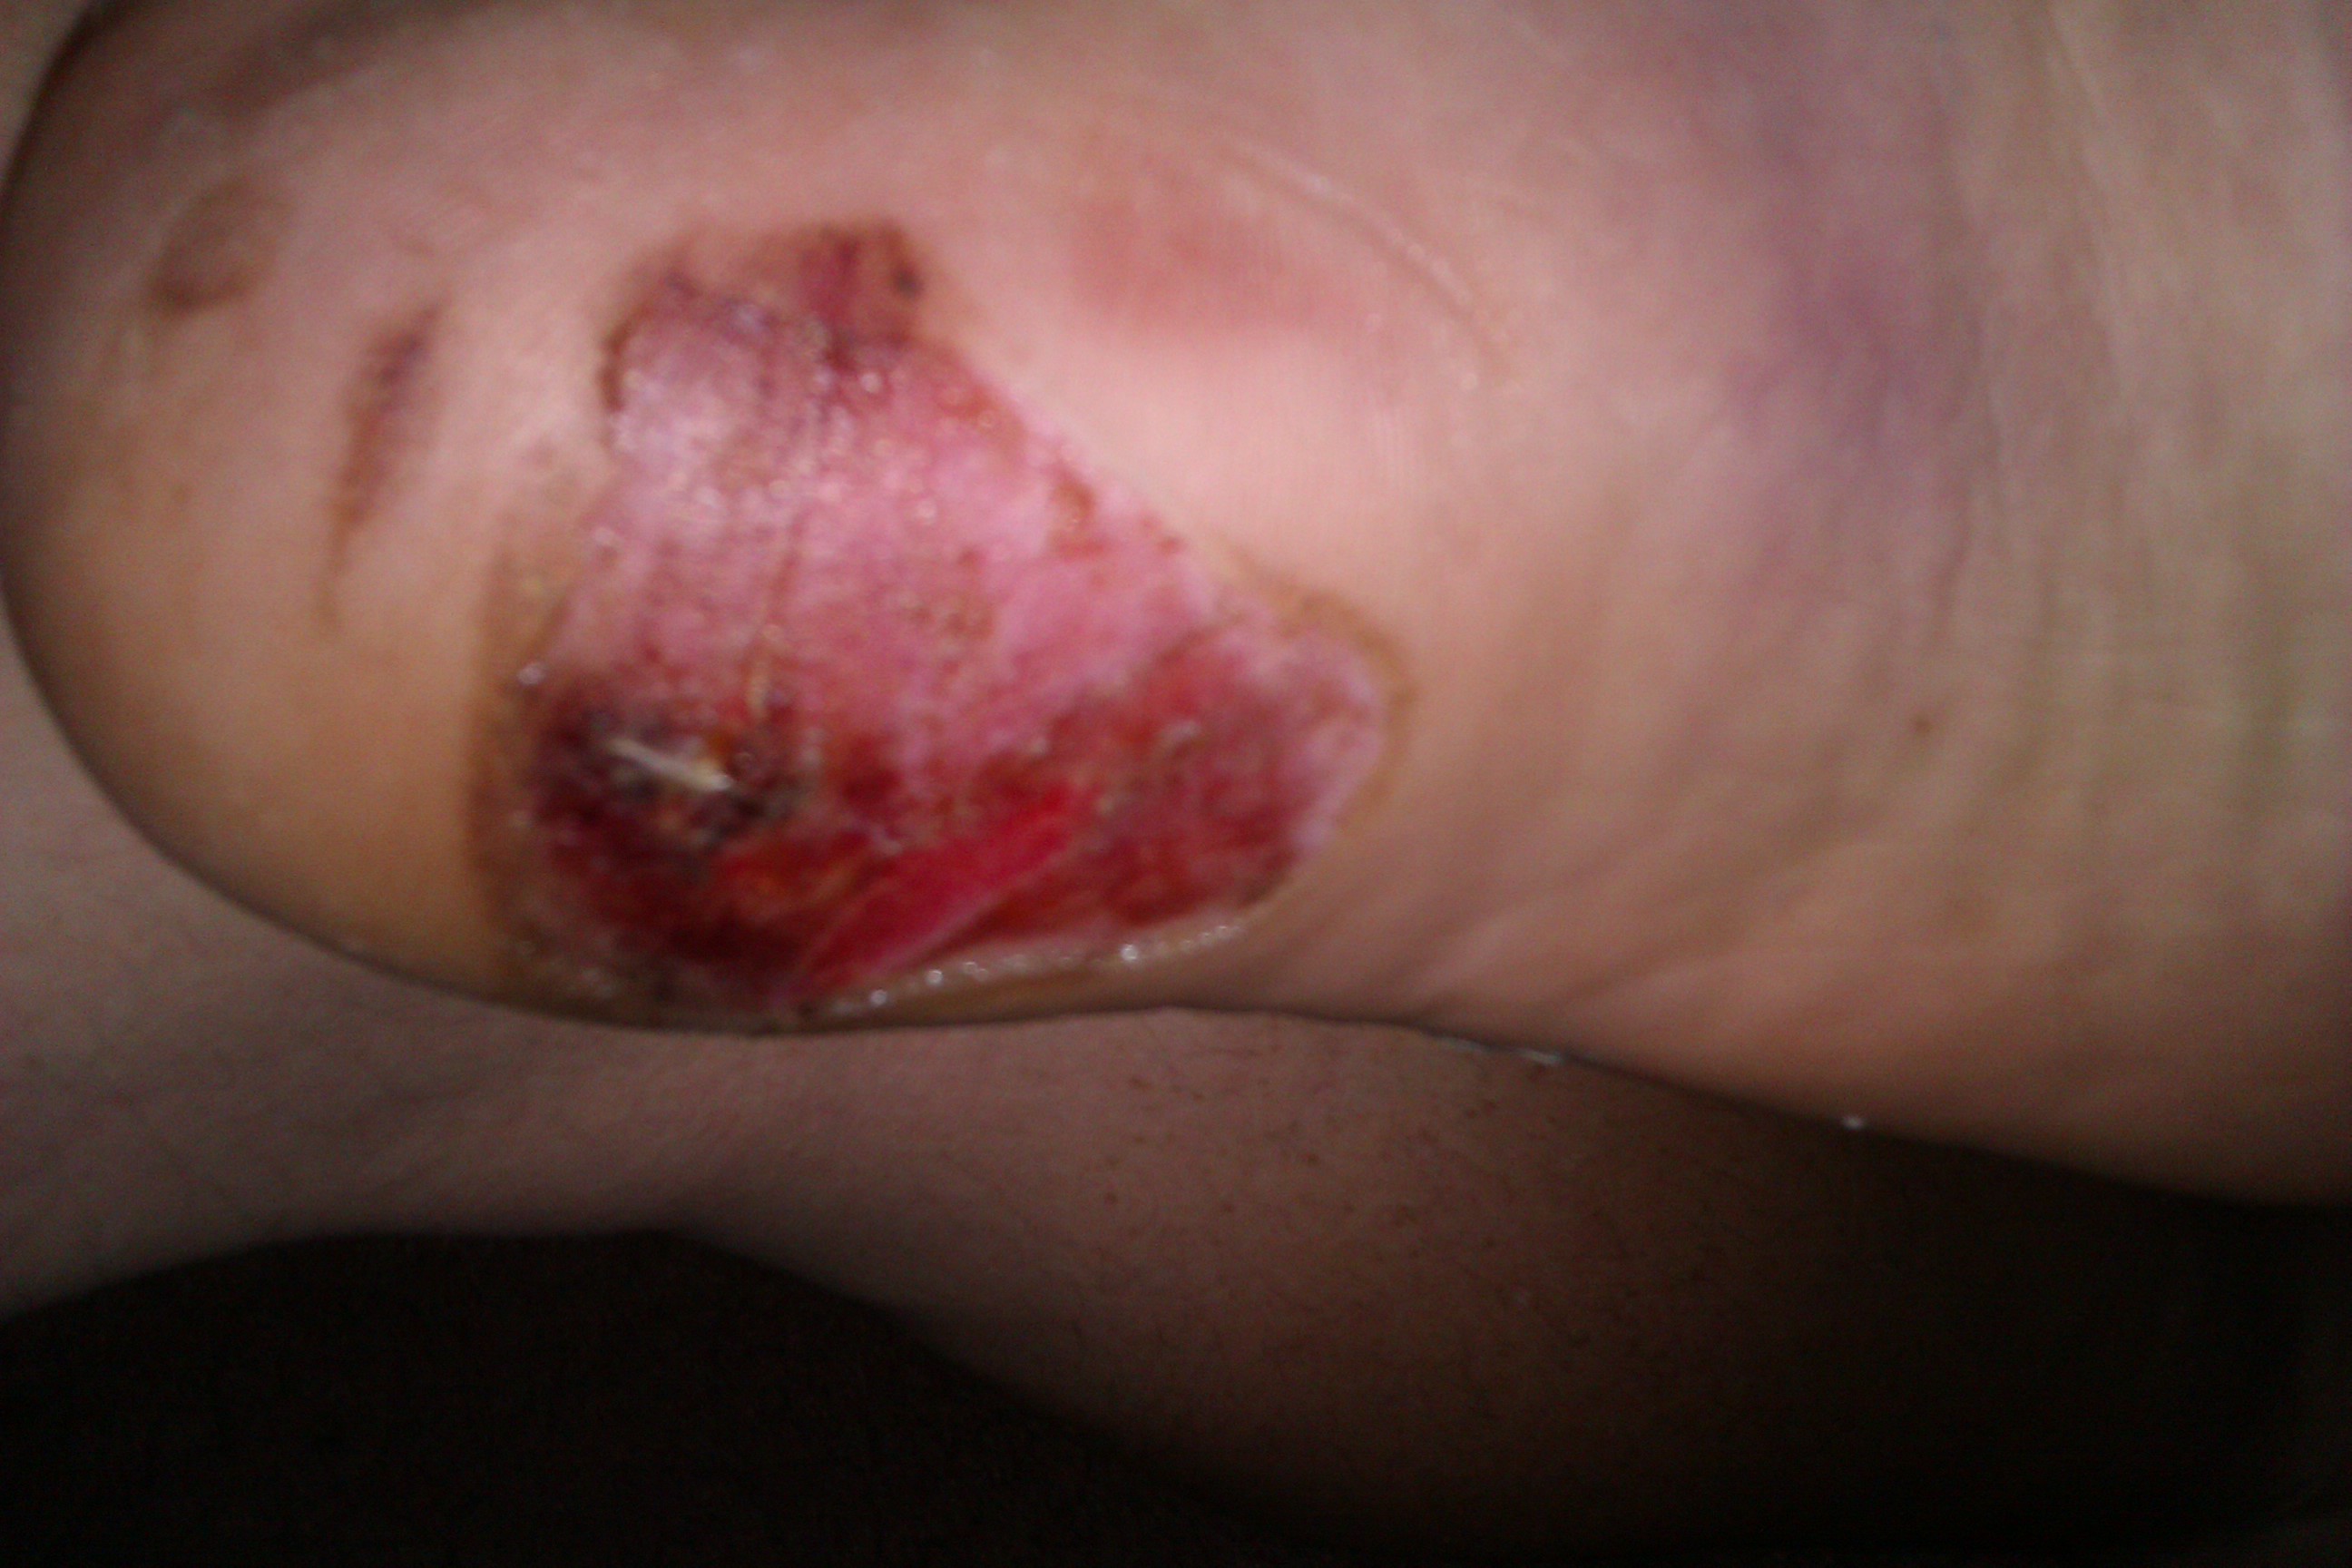 foot injury healing